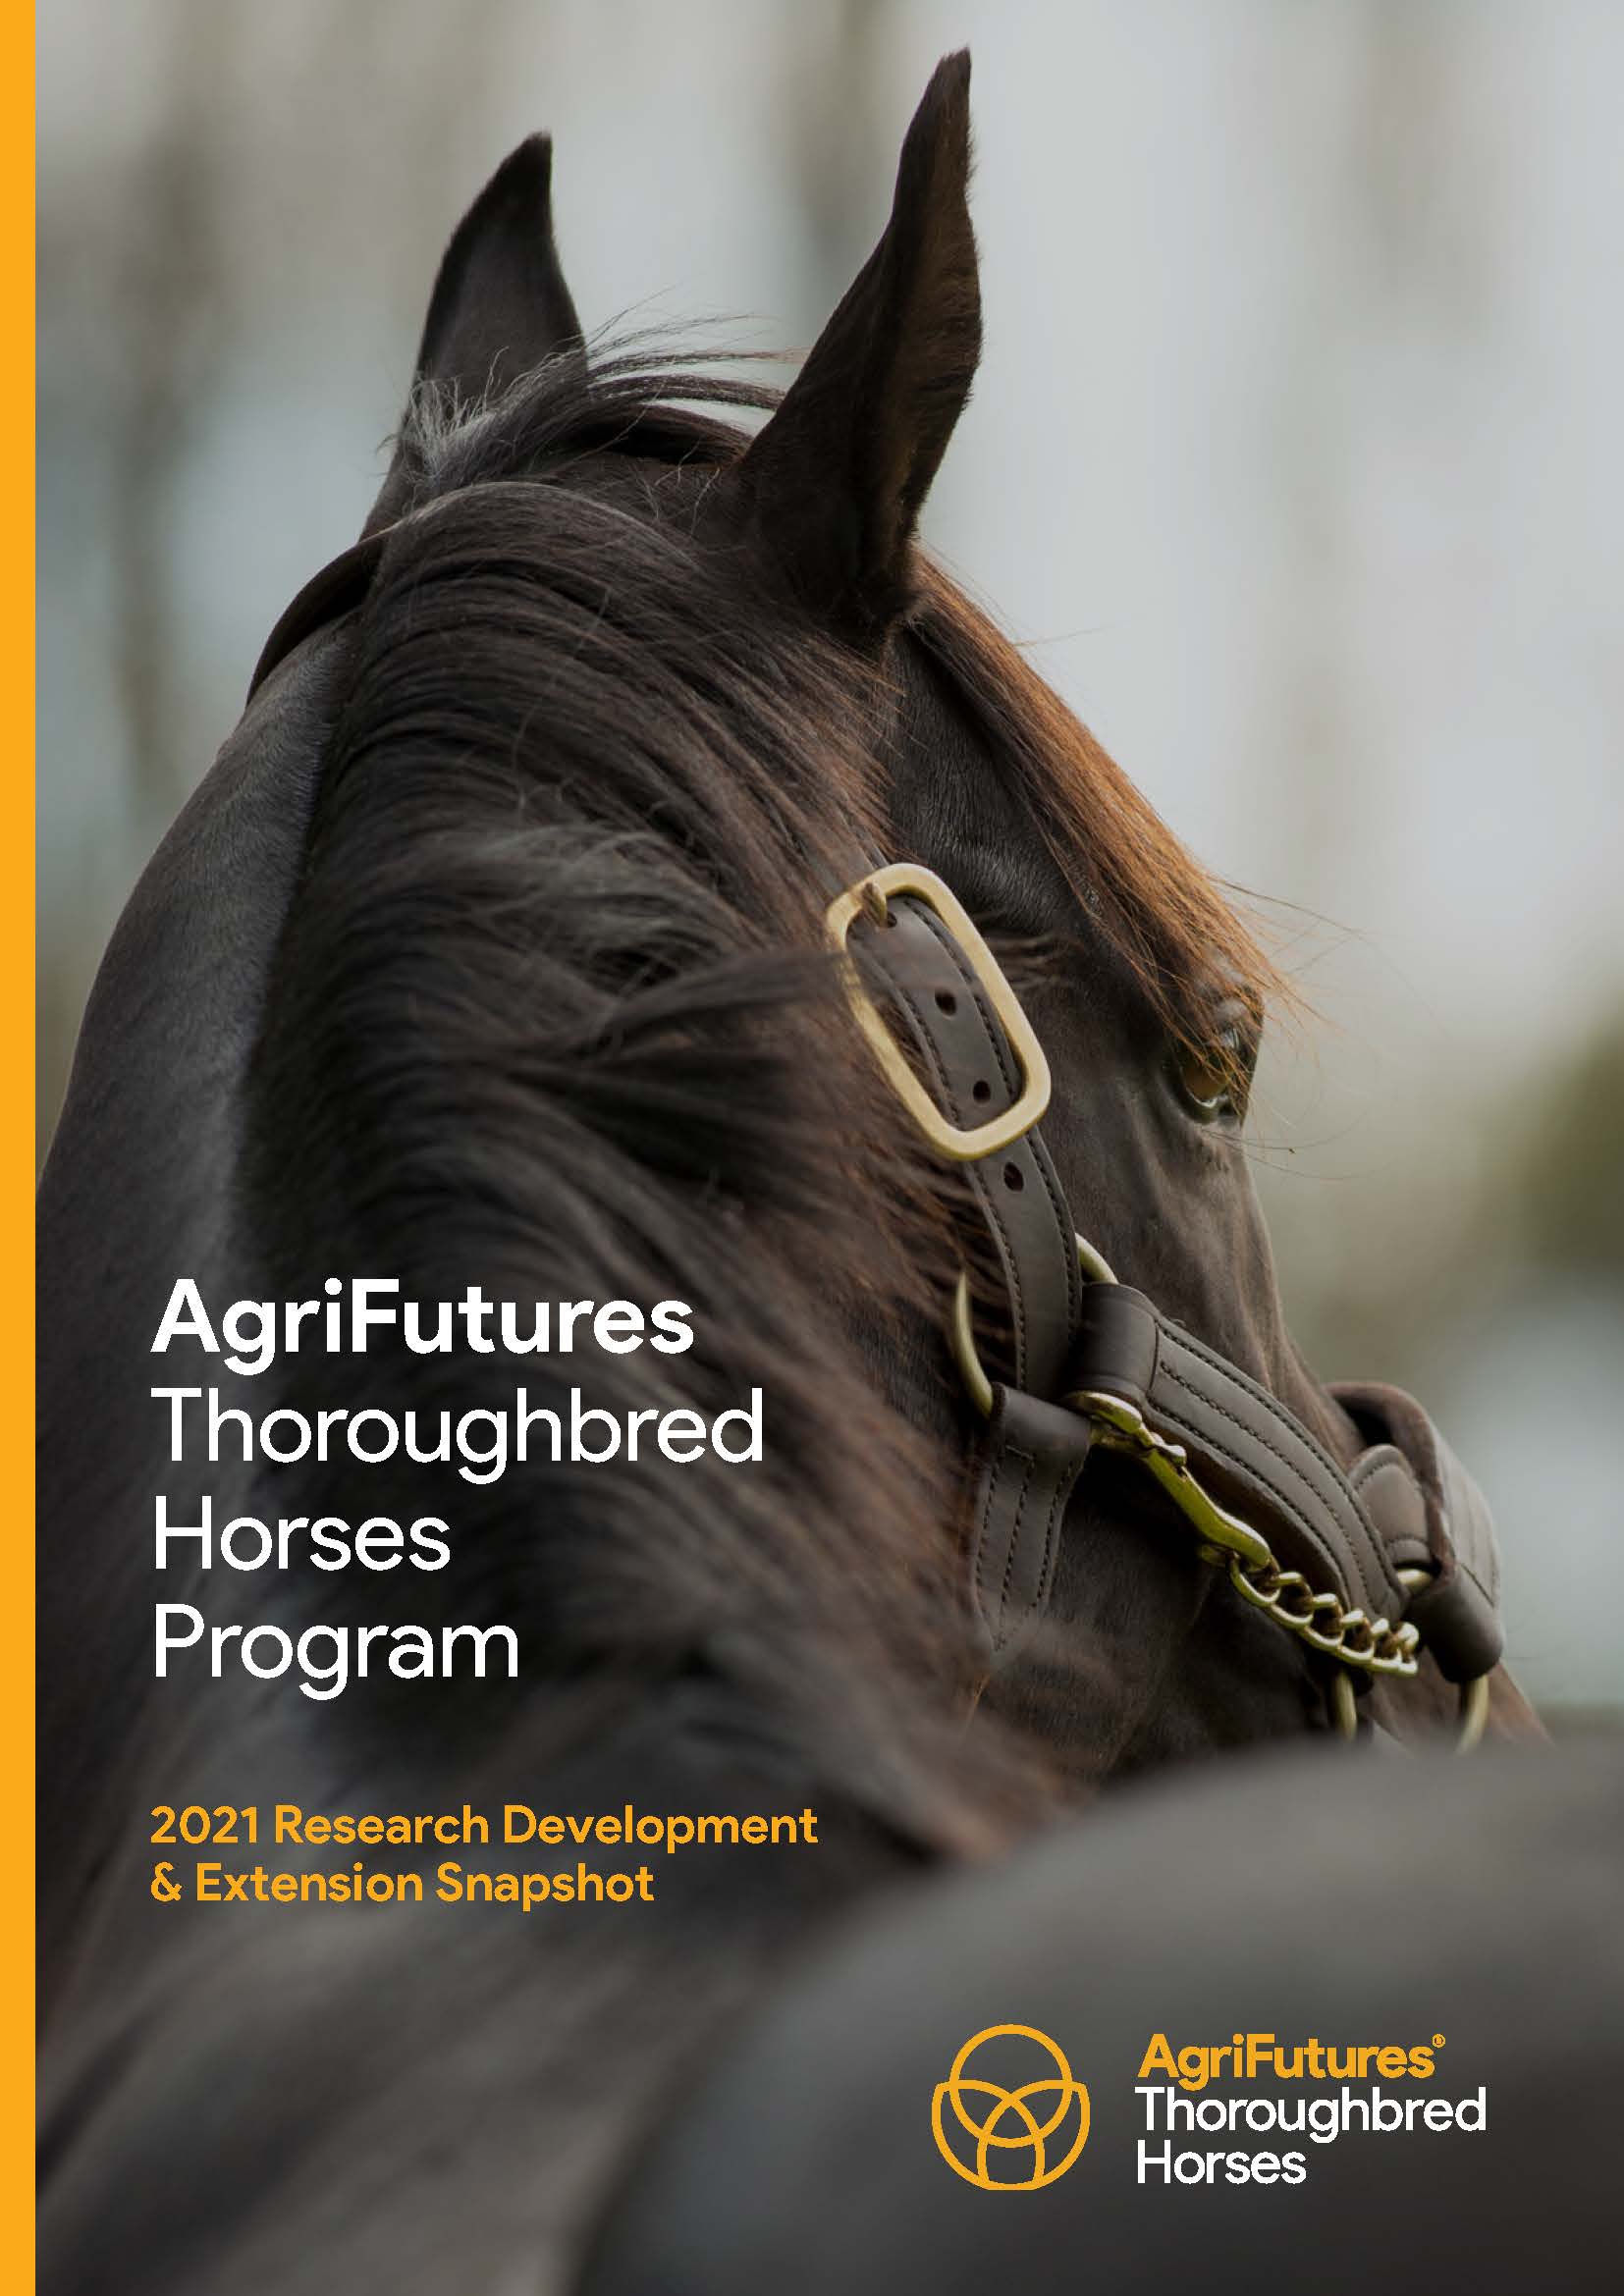 AgriFutures Thoroughbred Horses Program 2021 RD&E Snapshot - image